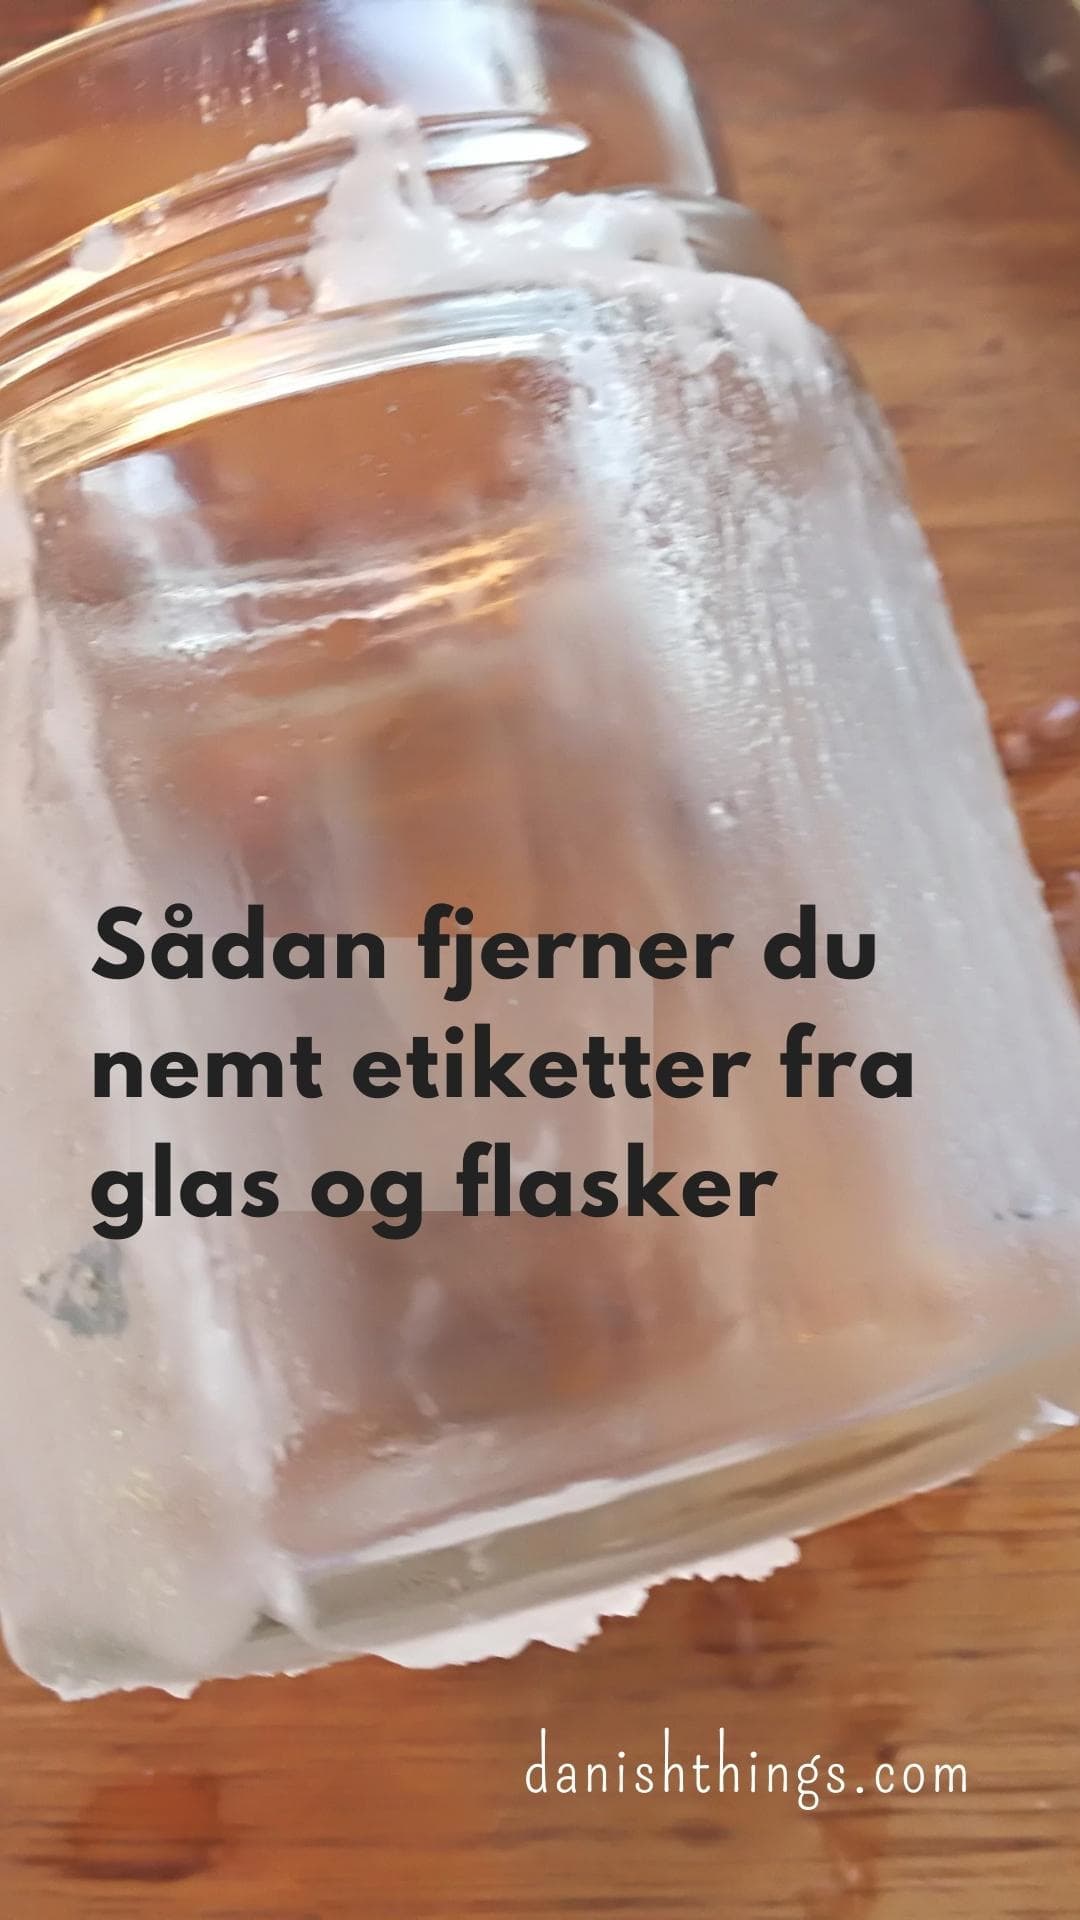 Forslag inch Great Barrier Reef Sådan fjerner du nemt etiketter fra glas og flasker - Danish Things